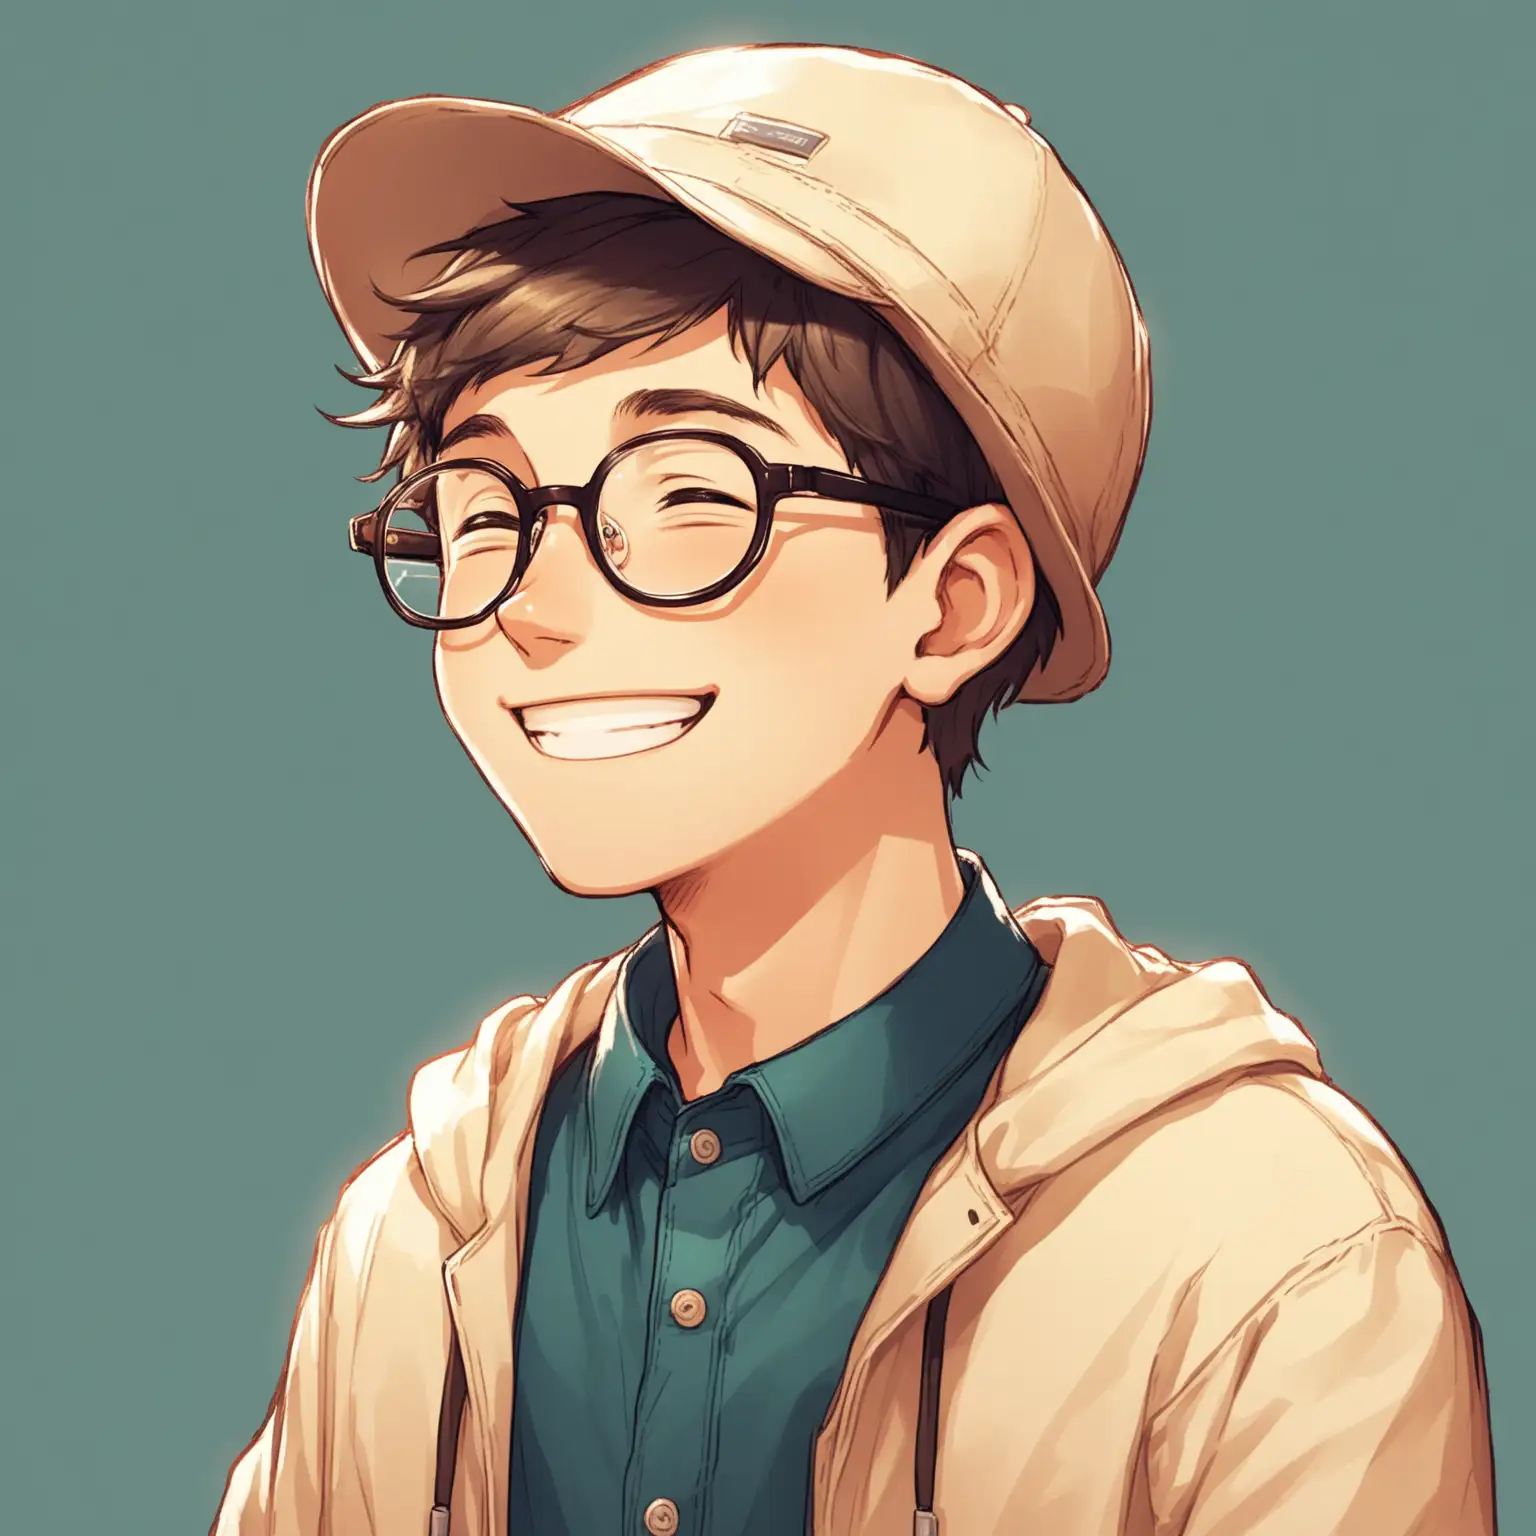 一个男孩，带着眼镜，气质阳光，微笑，戴帽子，程序员的感觉，侧脸